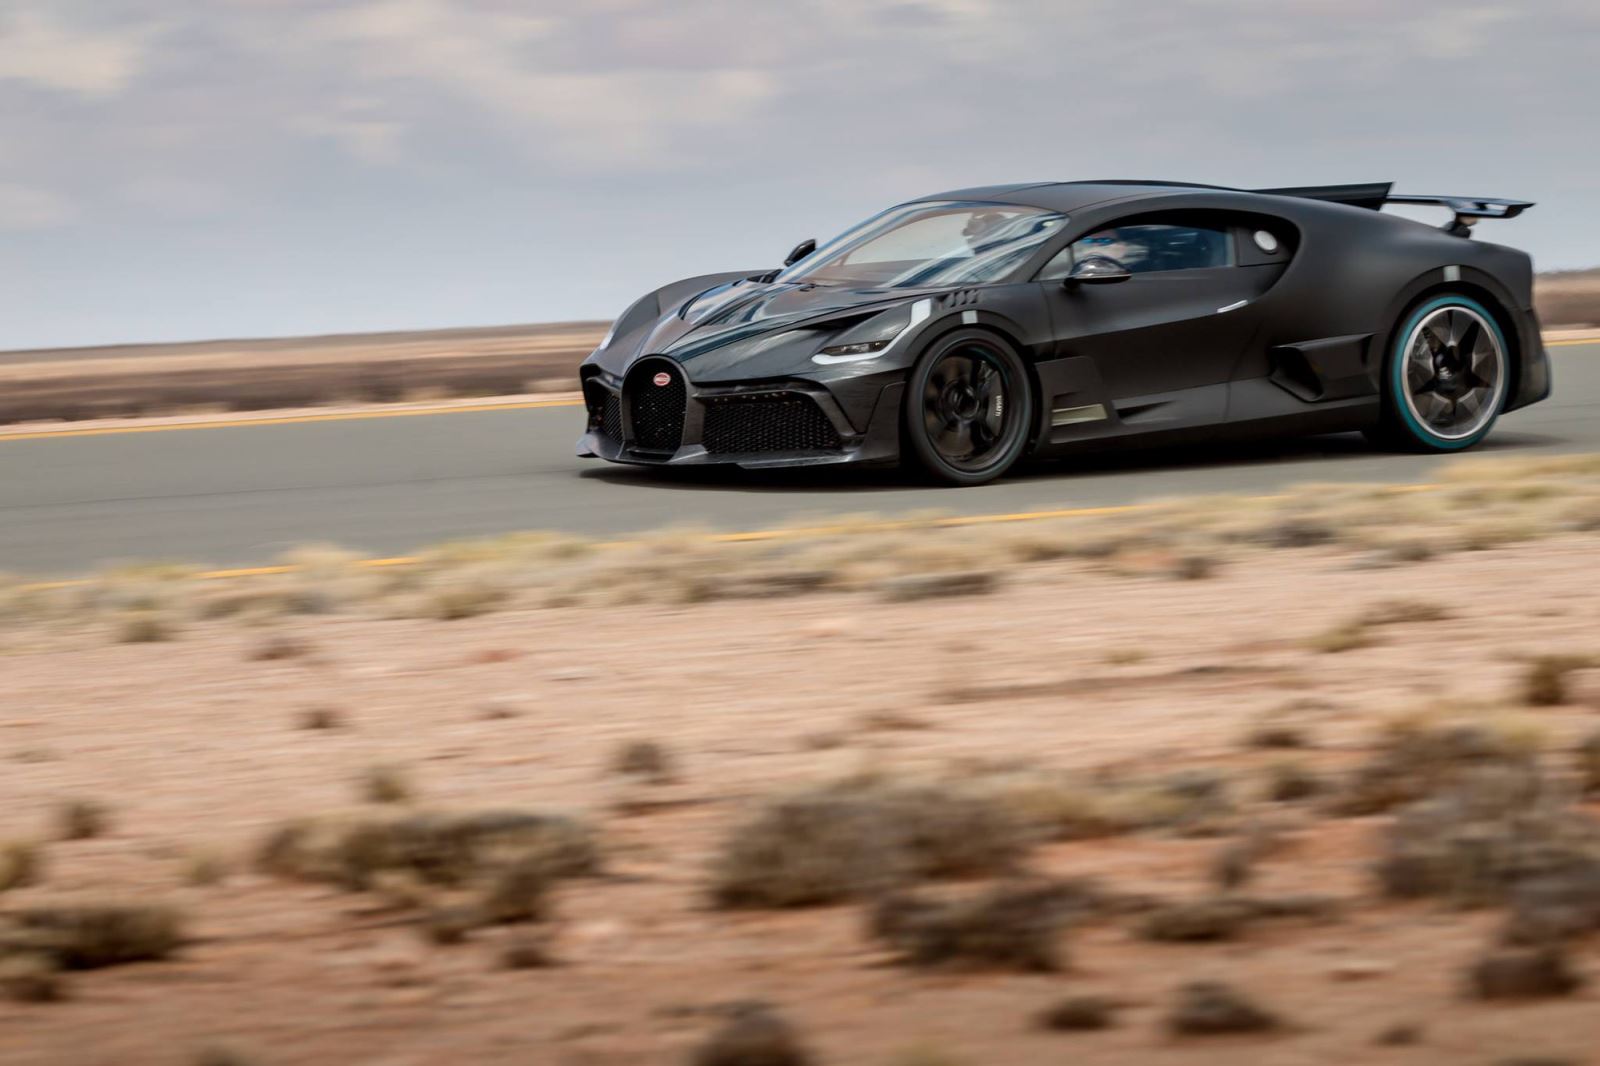 Thử siêu xe đình đám Bugatti Divo chạy 250 km/h trong cái nóng 40 độ liên tục không ngừng nghỉ 3